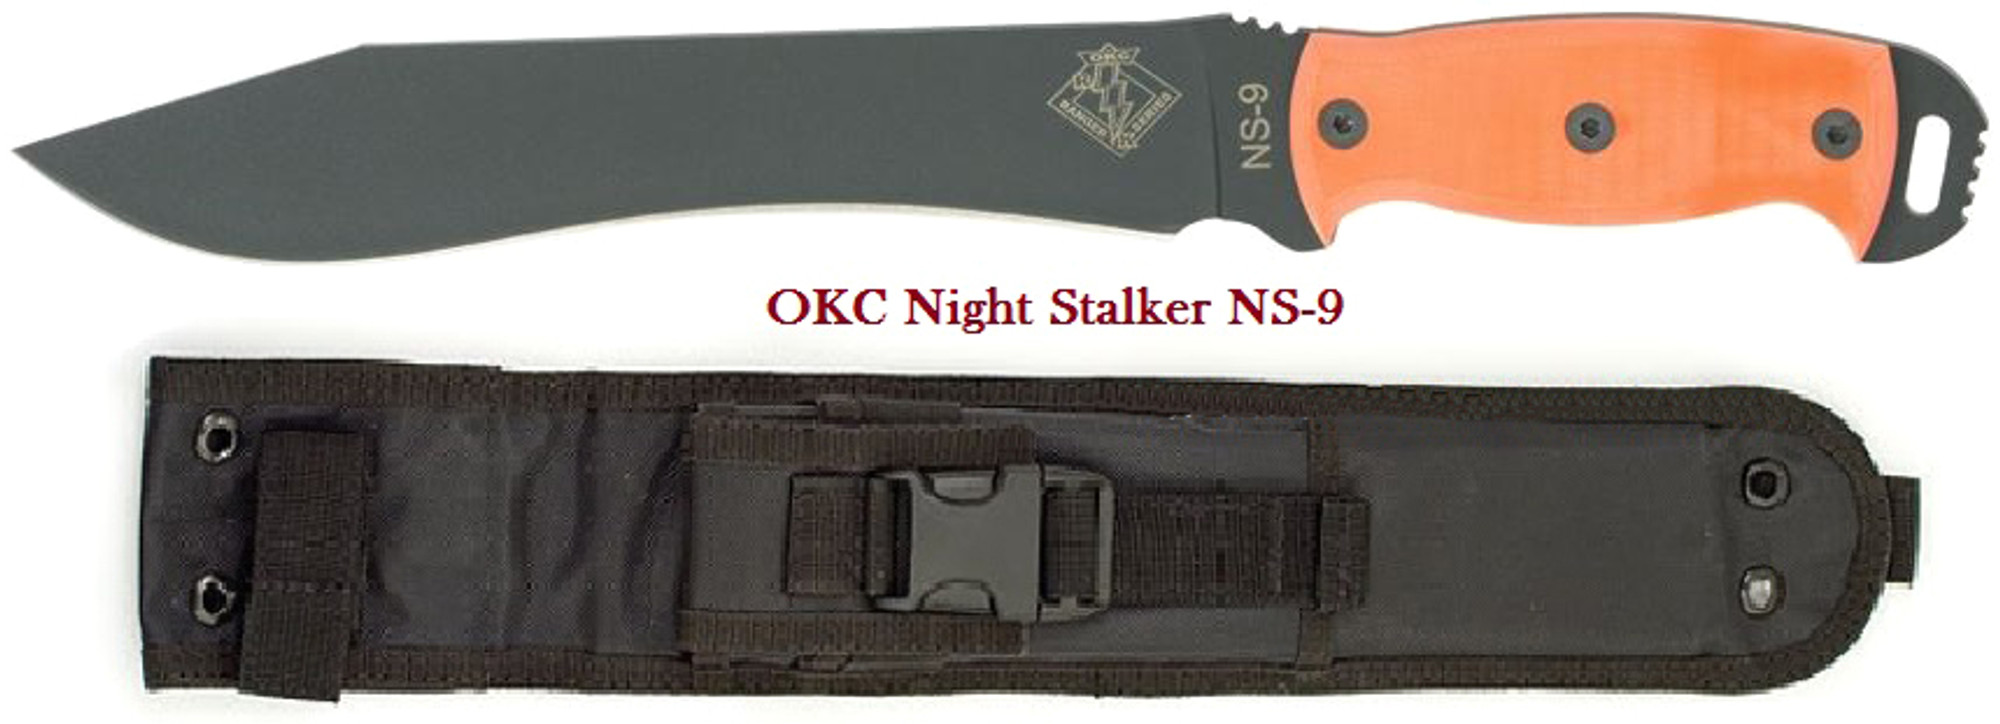 OKC 9422OG Ranger Night Stalker 9 - Orange G-10